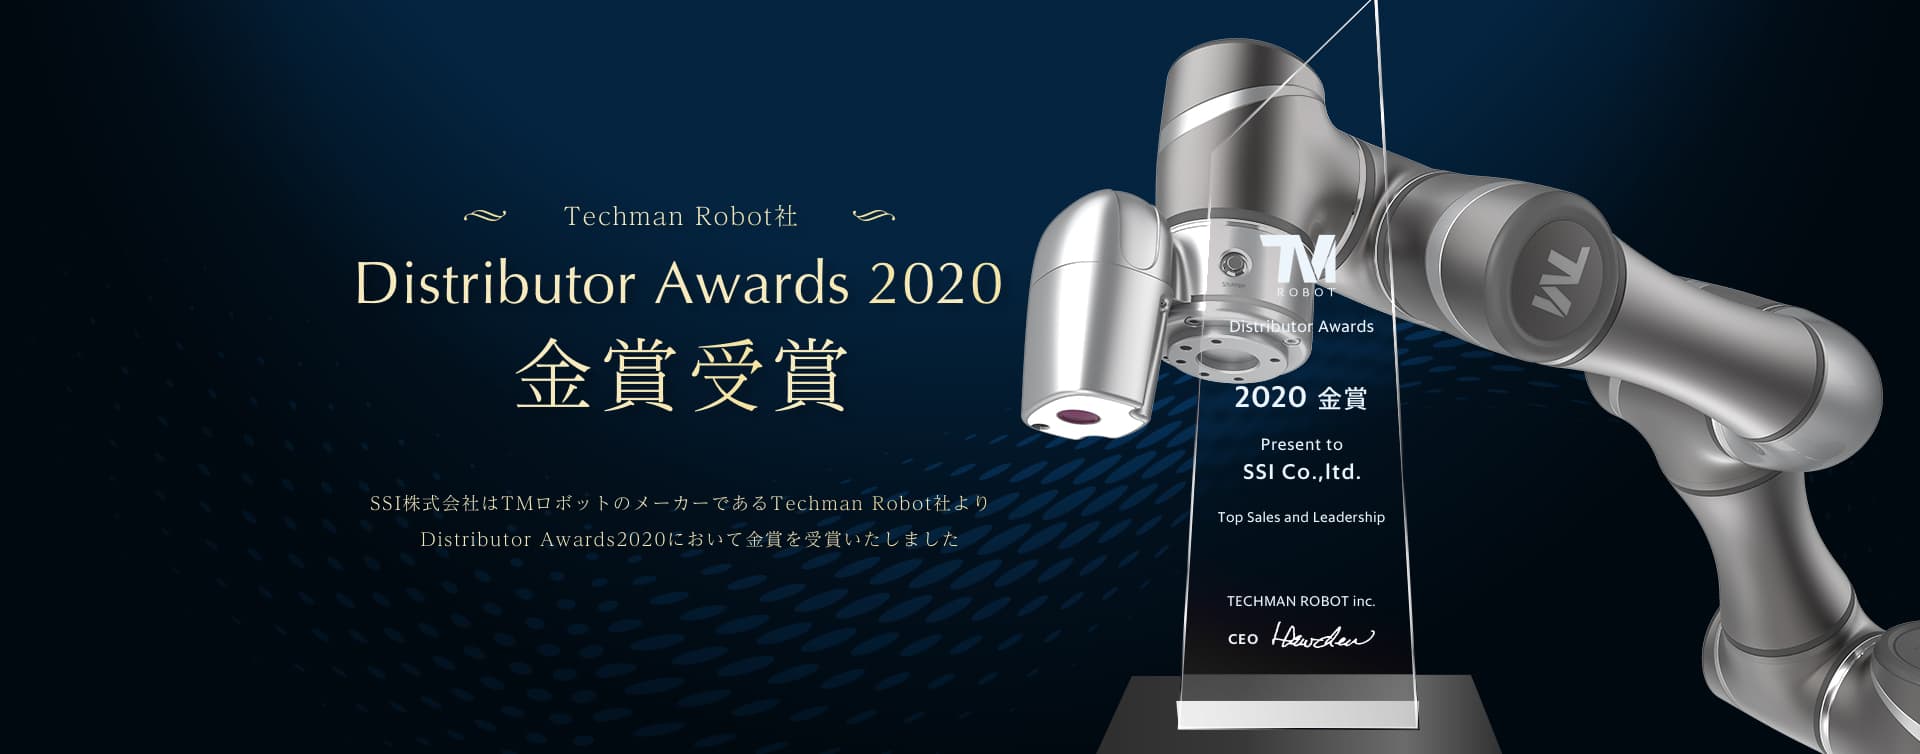 SSI株式会社はTMロボットのメーカーであるTechman Robot社より、Distributor Awards2020において金賞を受賞いたしました